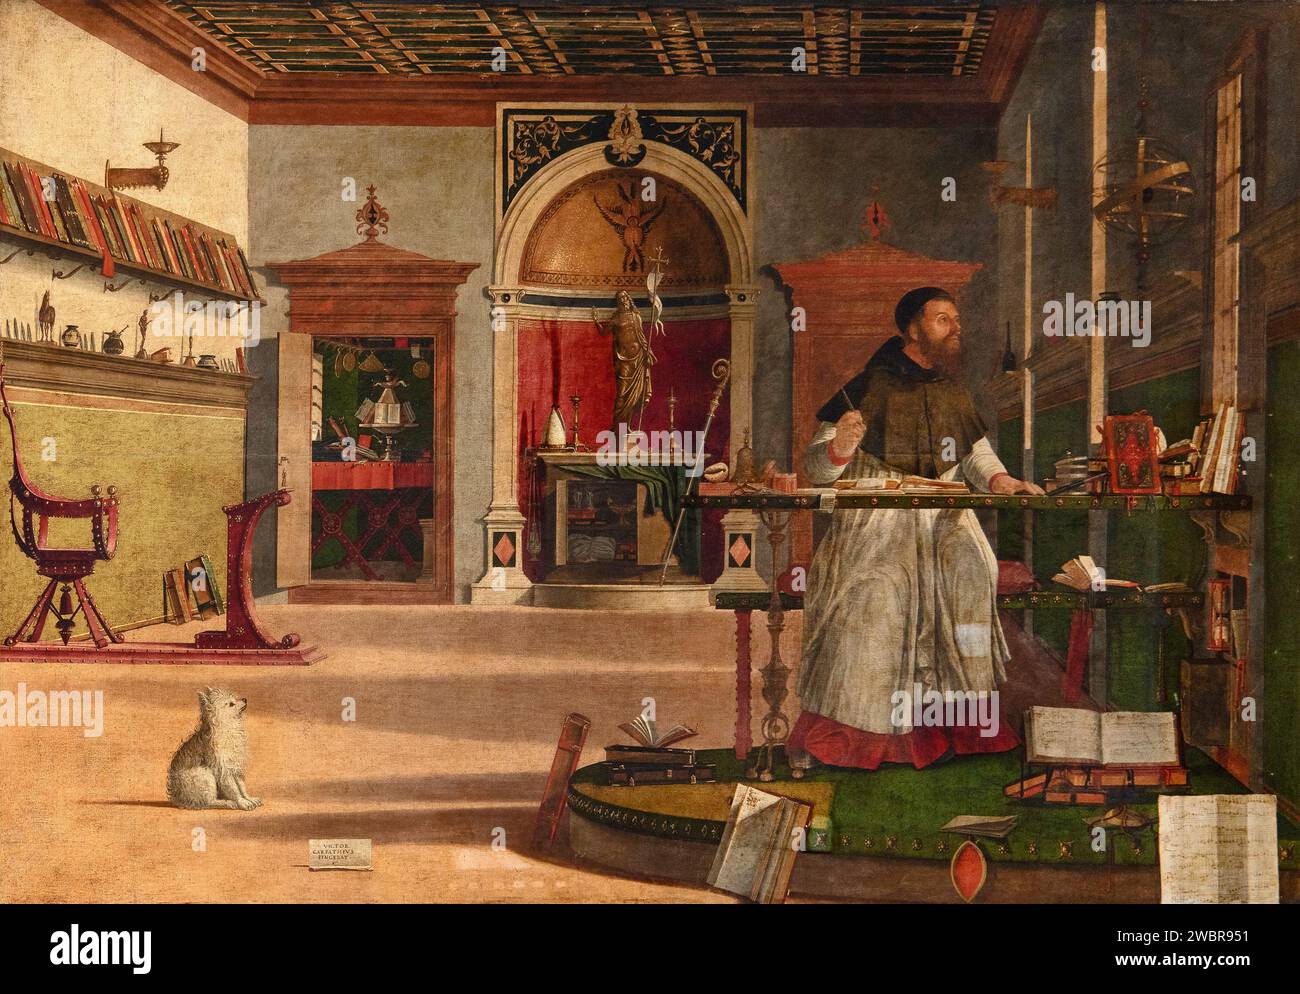 S. Agostino nello studio - olio su tela - Vittore Carpaccio - 1502 - Venezia, Scuola Dalmata dei Santi Giorgio e Trifone, detta anche Scuola di S.Gio Banque D'Images